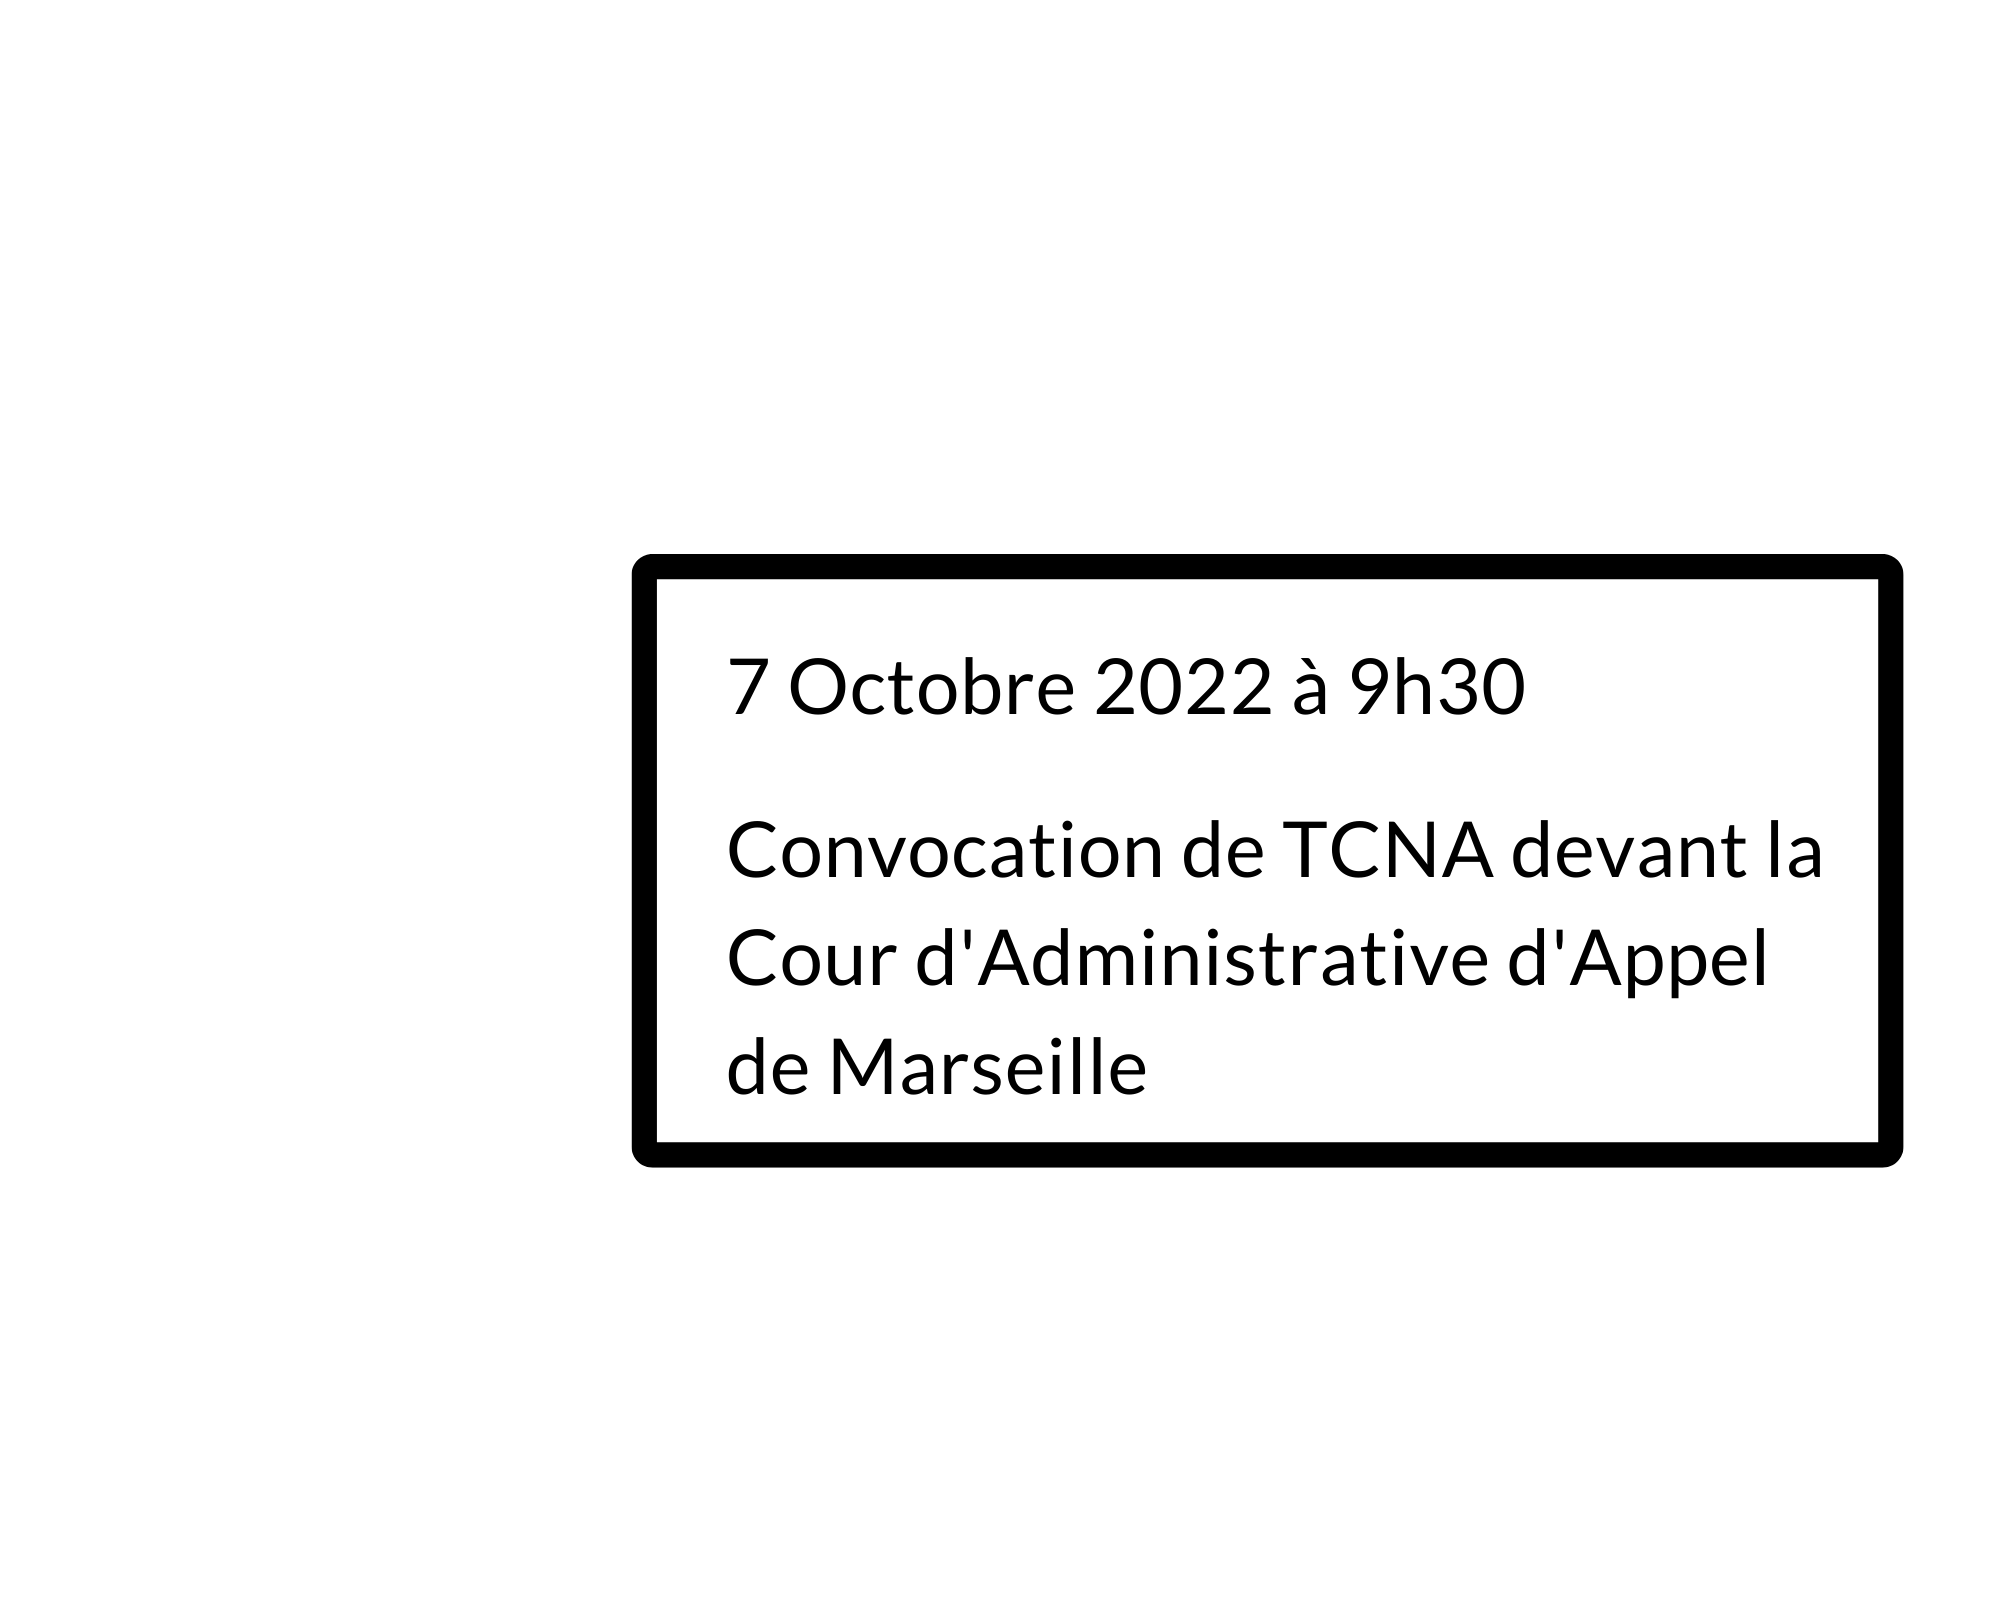 Convocation le 7/10/2022 Cour d’Appel Administrative de Marseille